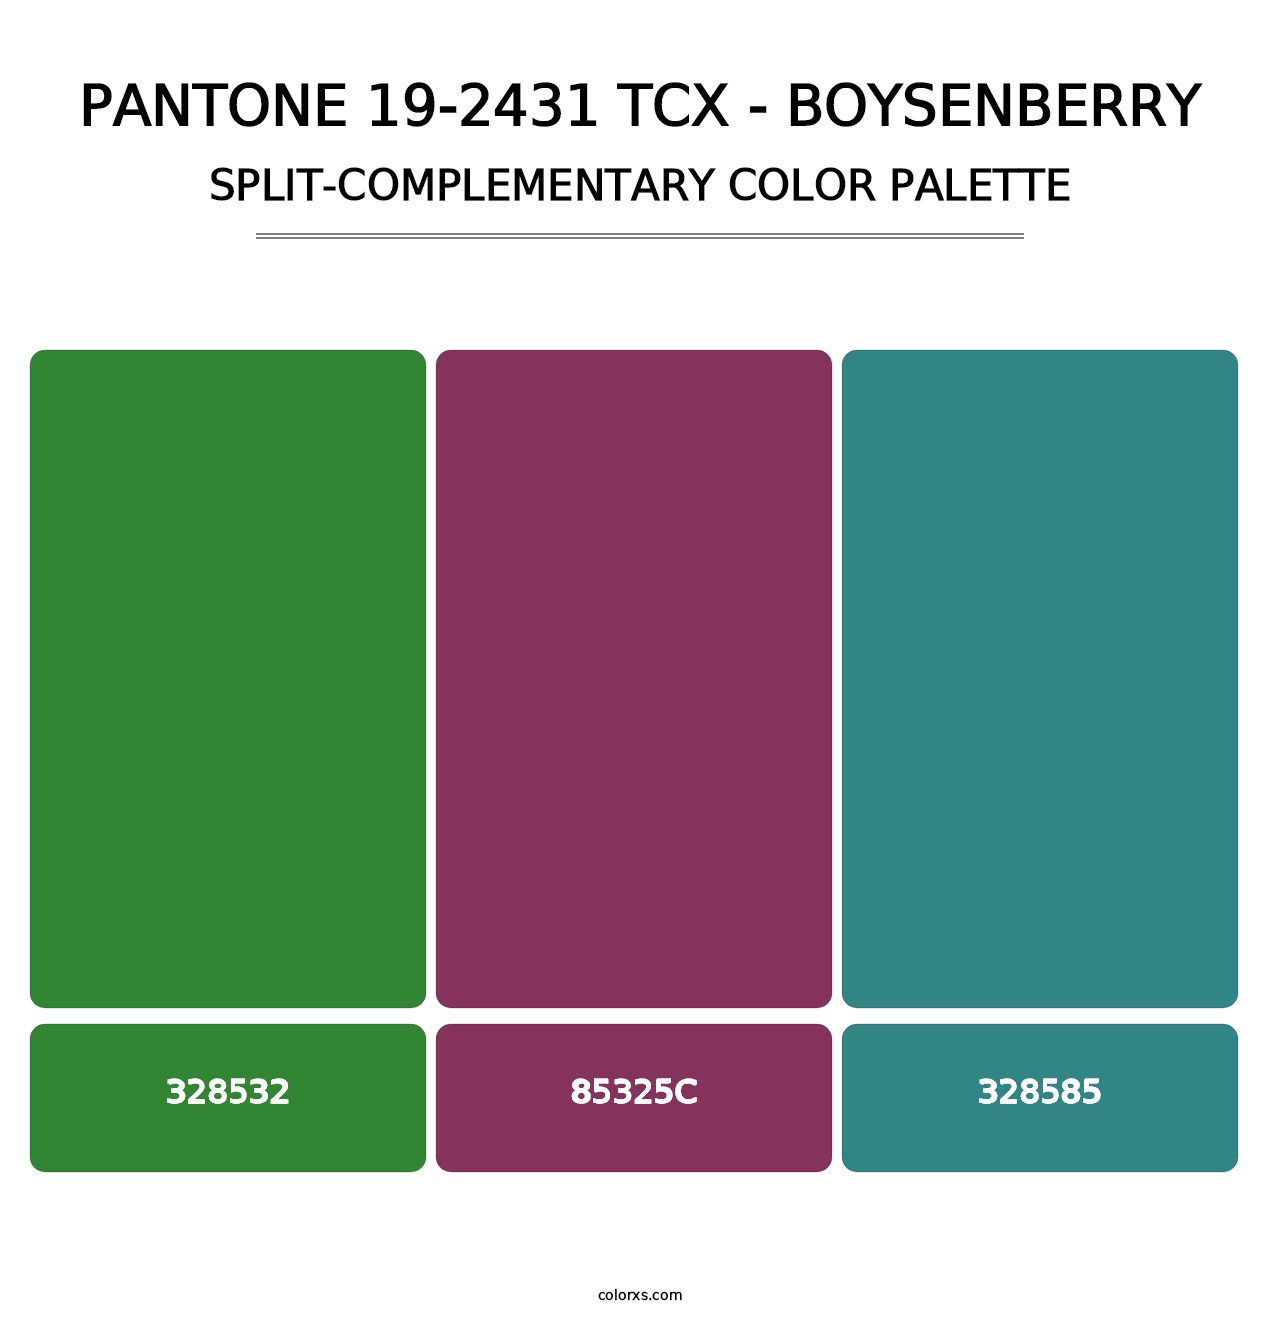 PANTONE 19-2431 TCX - Boysenberry - Split-Complementary Color Palette